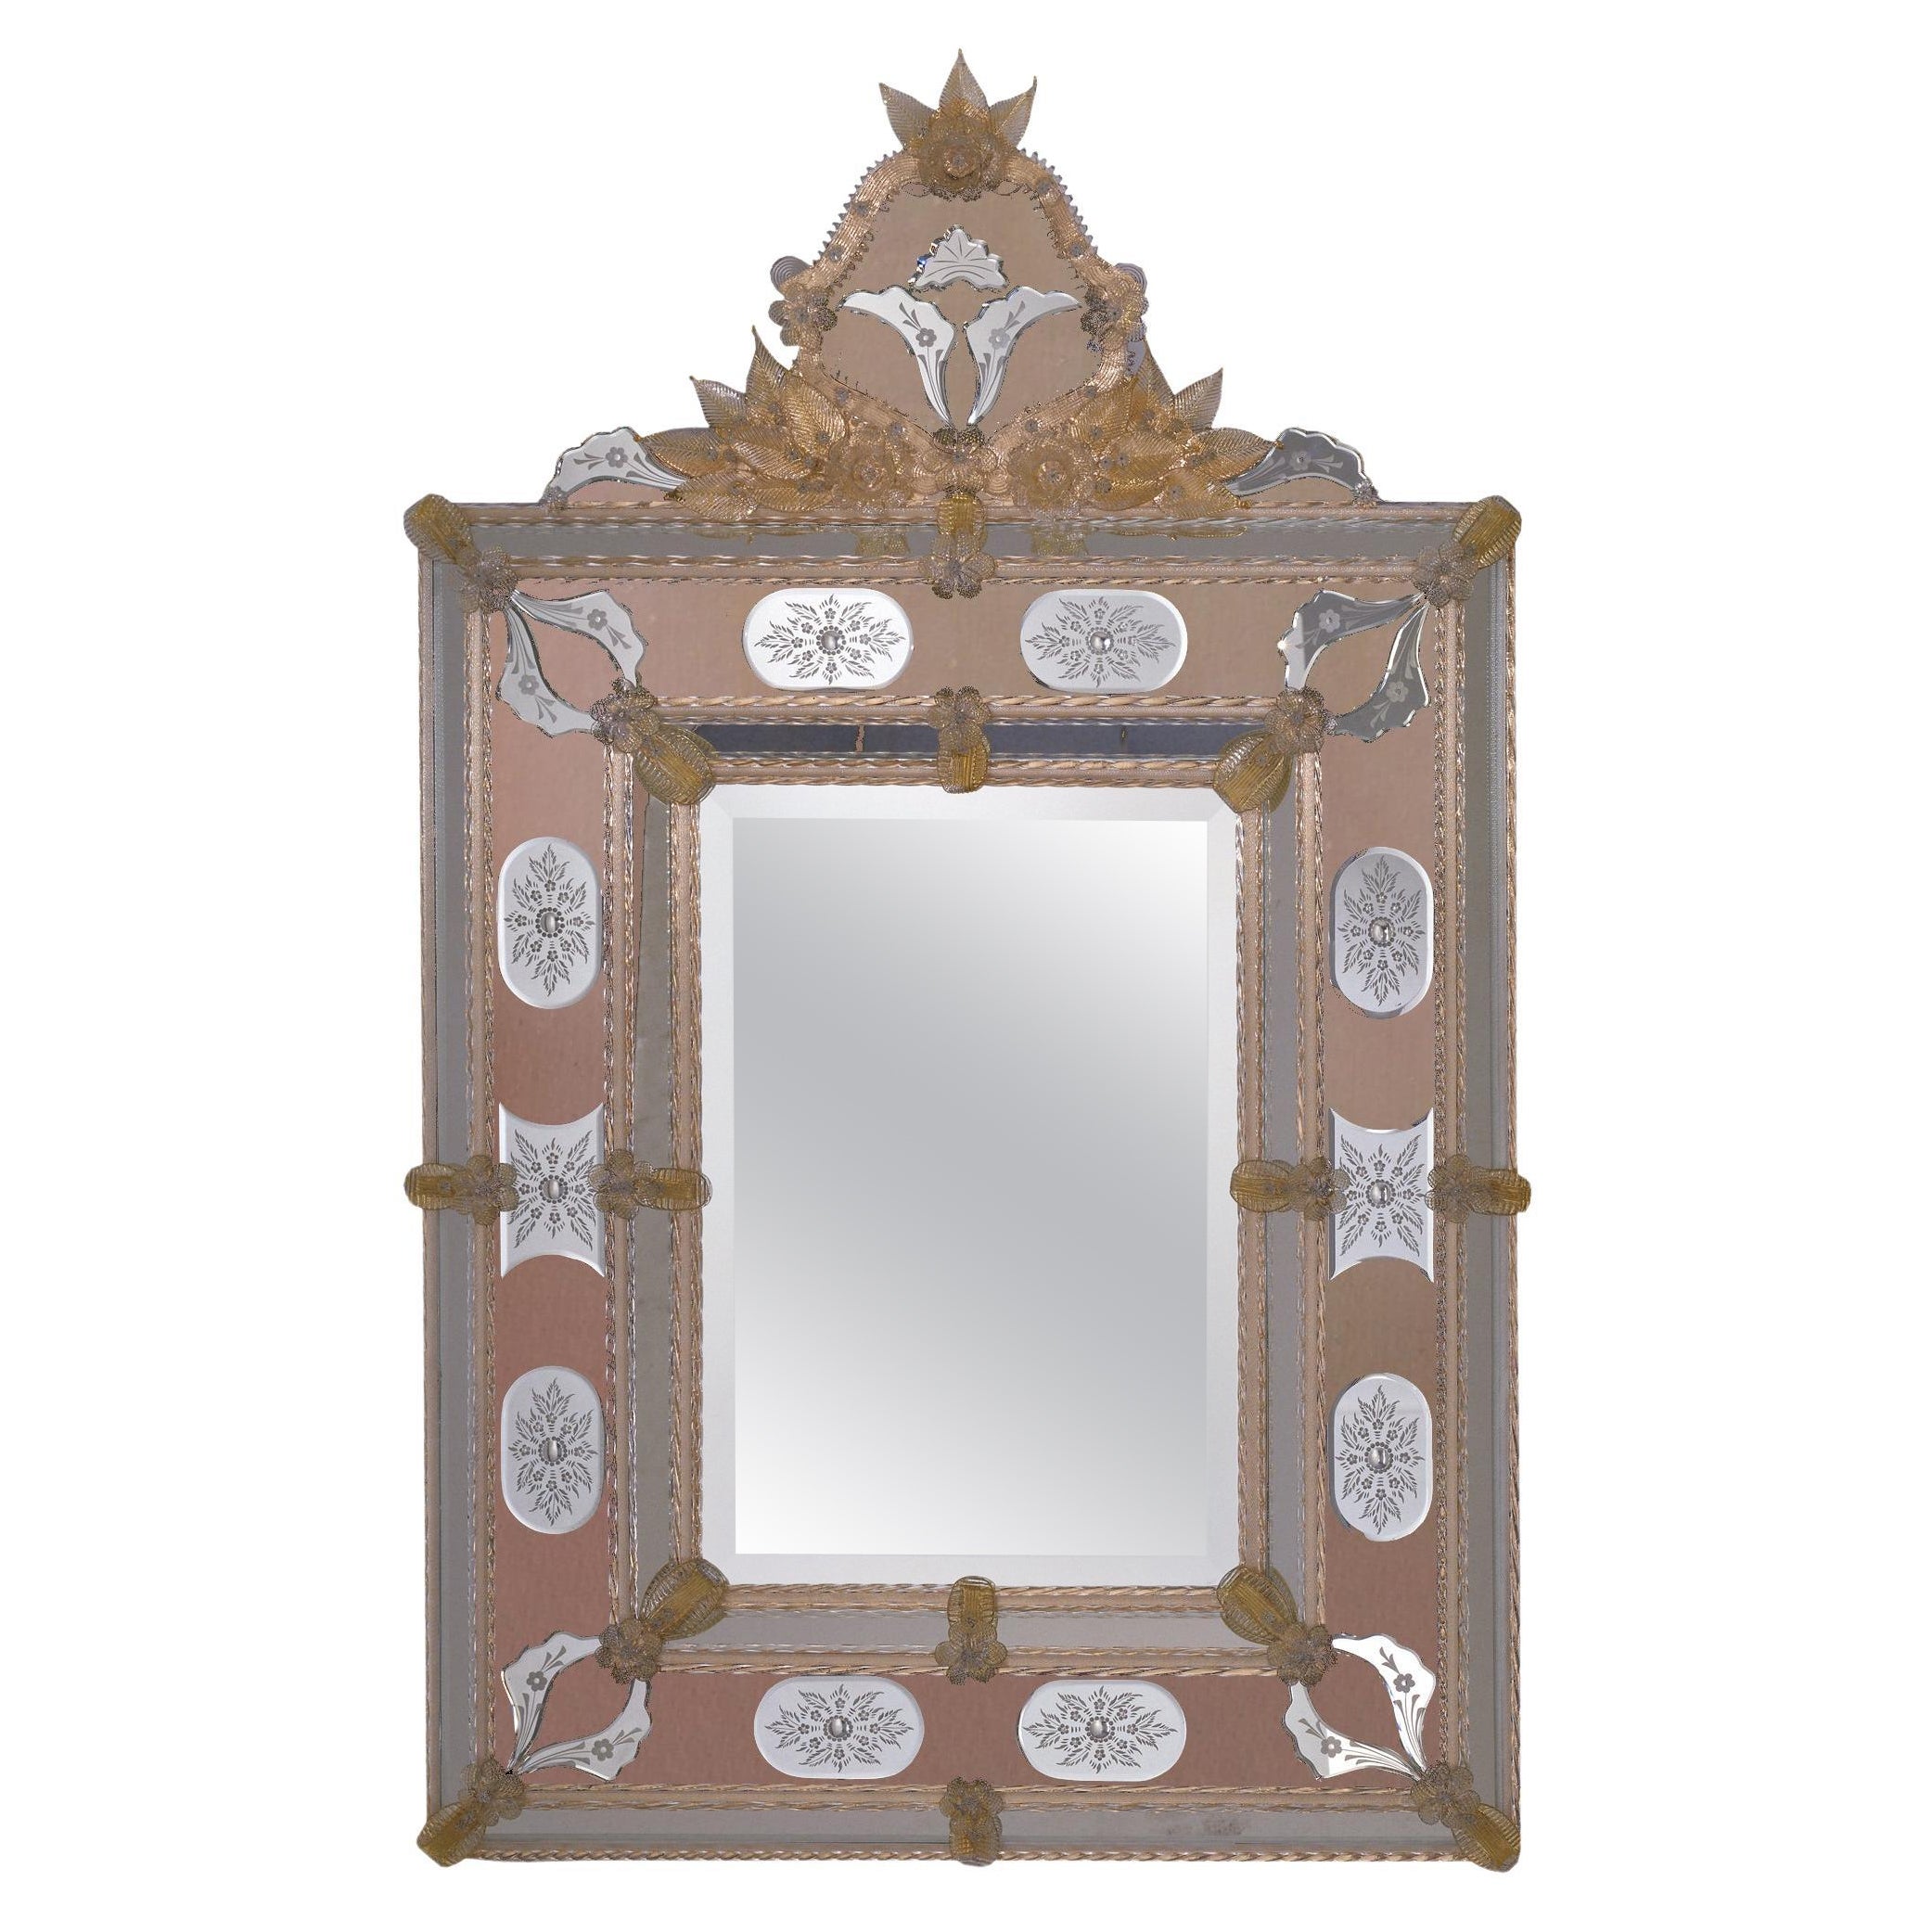 "Cà Noghera Pink" Specchio Veneziano in Vetro di Murano dei Fratelli Tosi